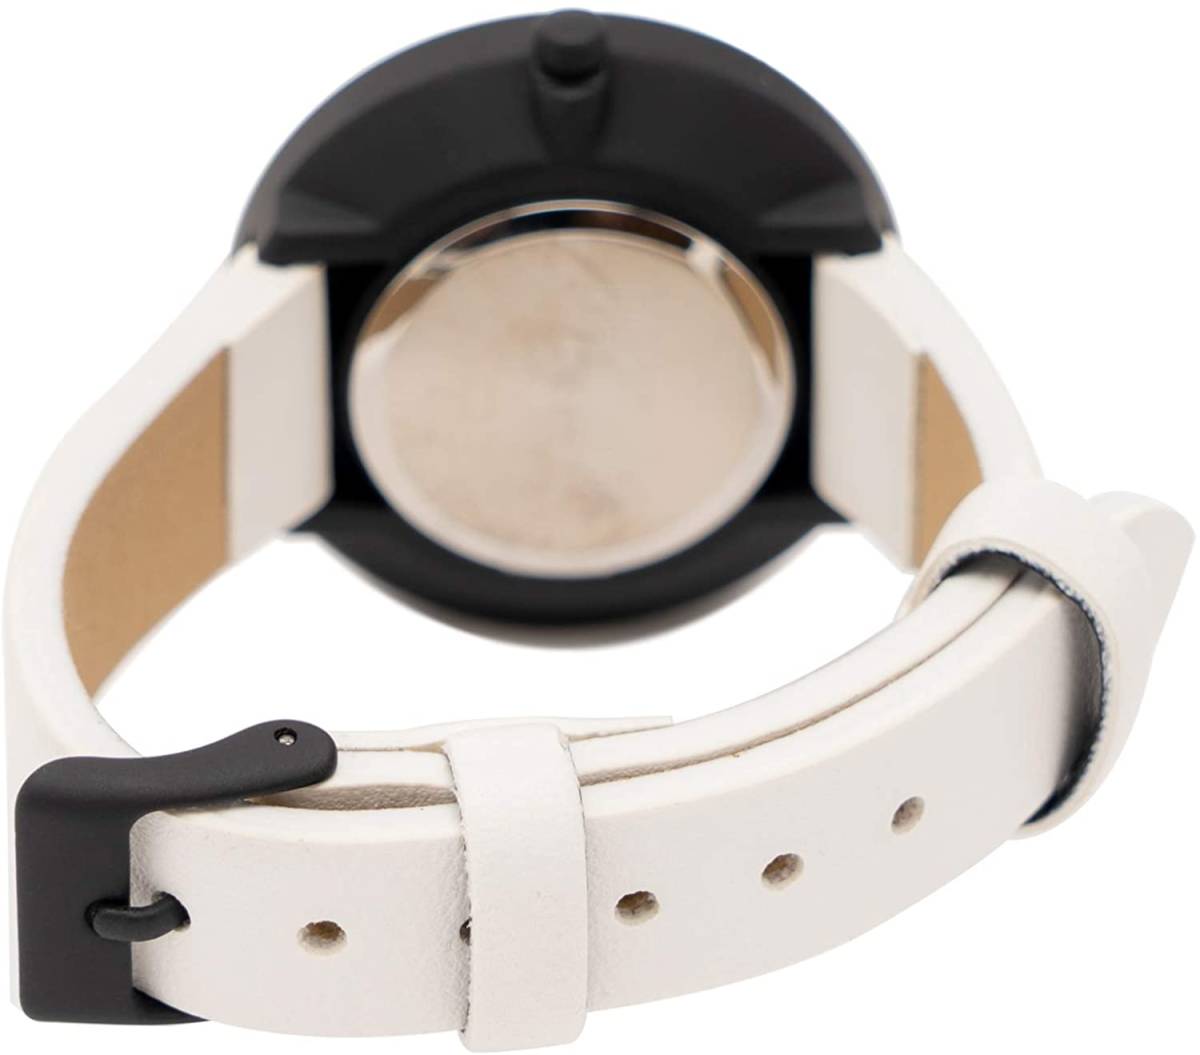 フィールドワーク 腕時計 アナログ スヌーピー ホワイト 革ベルト シンプル 刻印入り ファッション オシャレ かわいい プレゼント_画像5